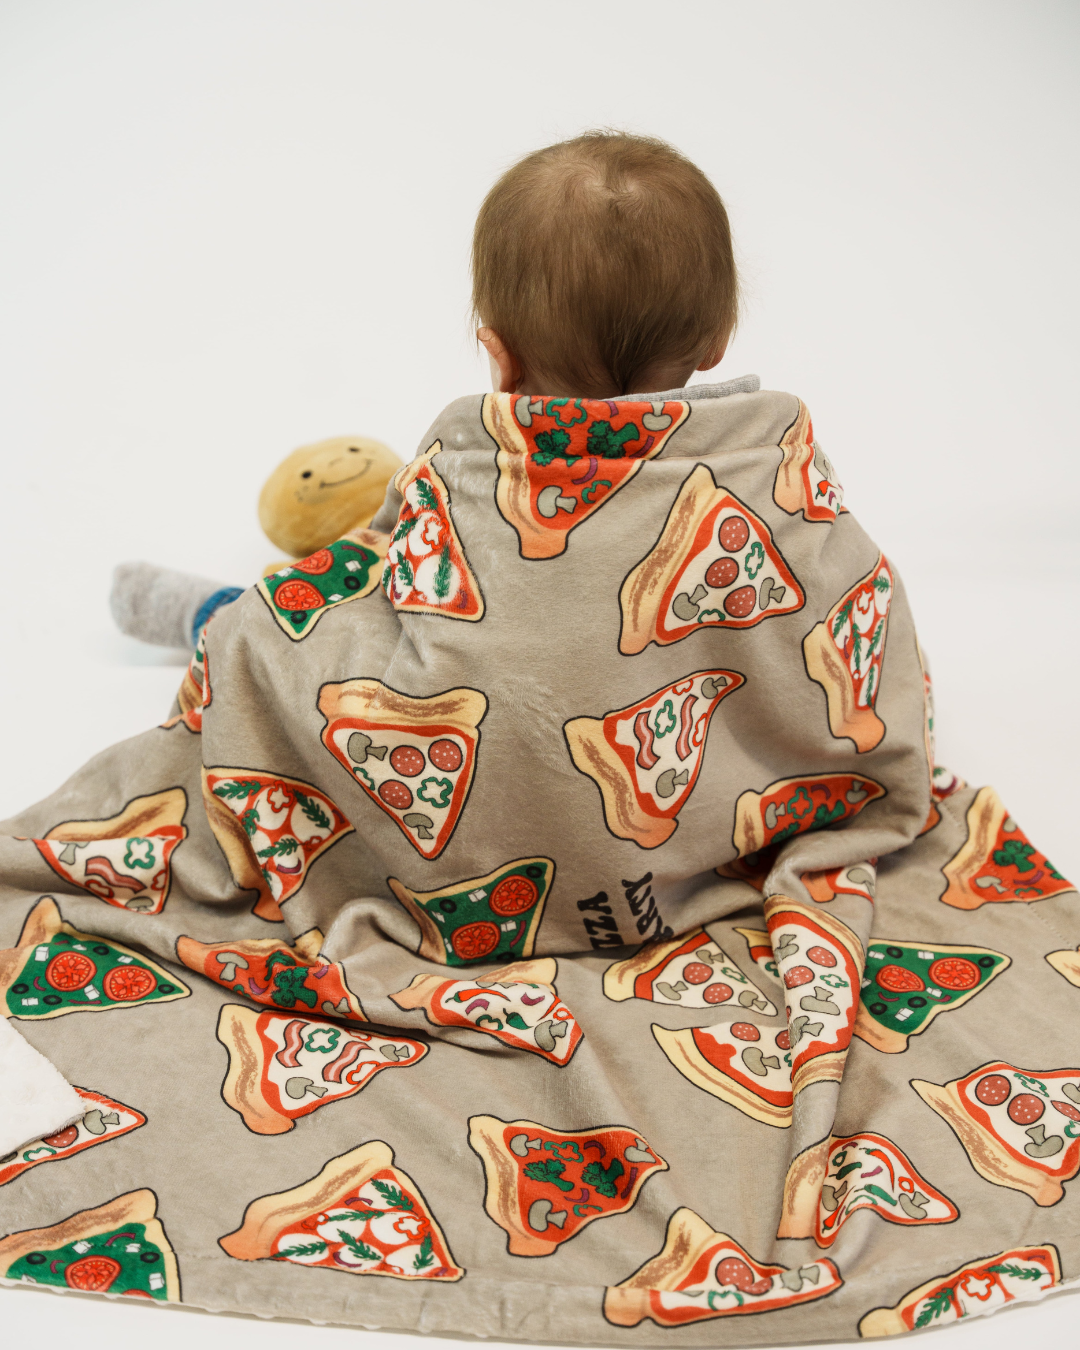 Couverture de bébé : Pizza party